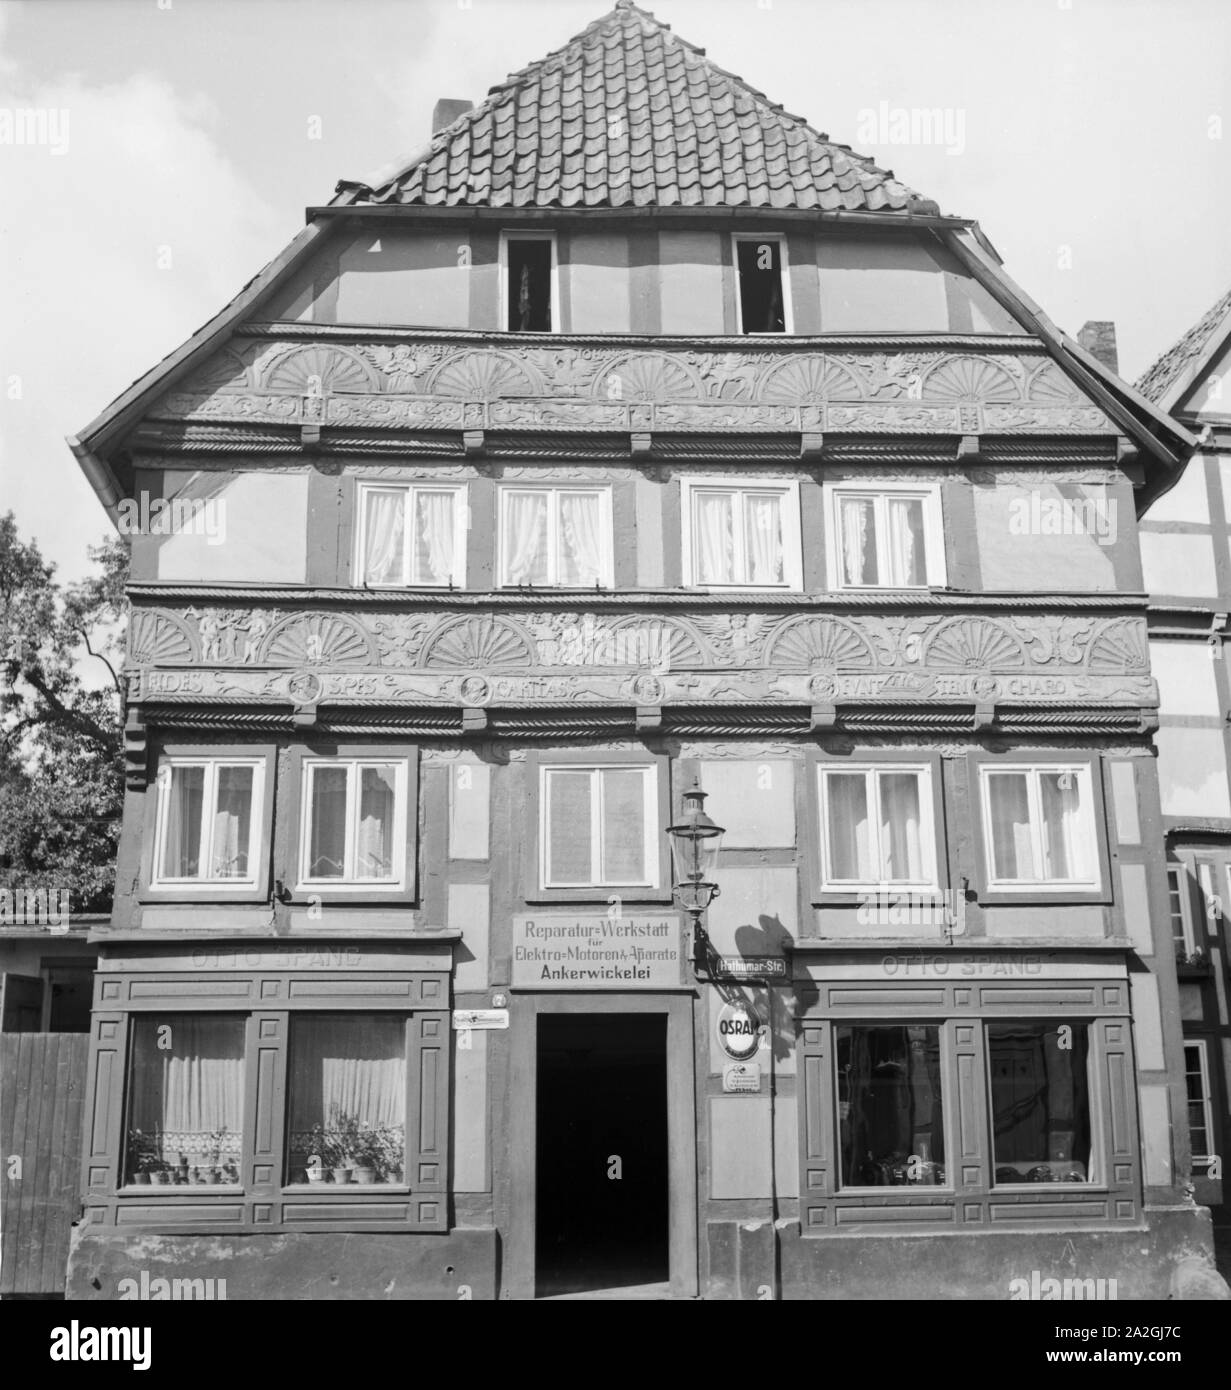 Das Haus mit dem Geschäft für Ankerwicklerei von Otto Spang in Höxter im Weserbergland, Deutschland 1930er Jahre. Otto Spang's outlet in an old timered house at Hoexter, Germany 1930s. Stock Photo